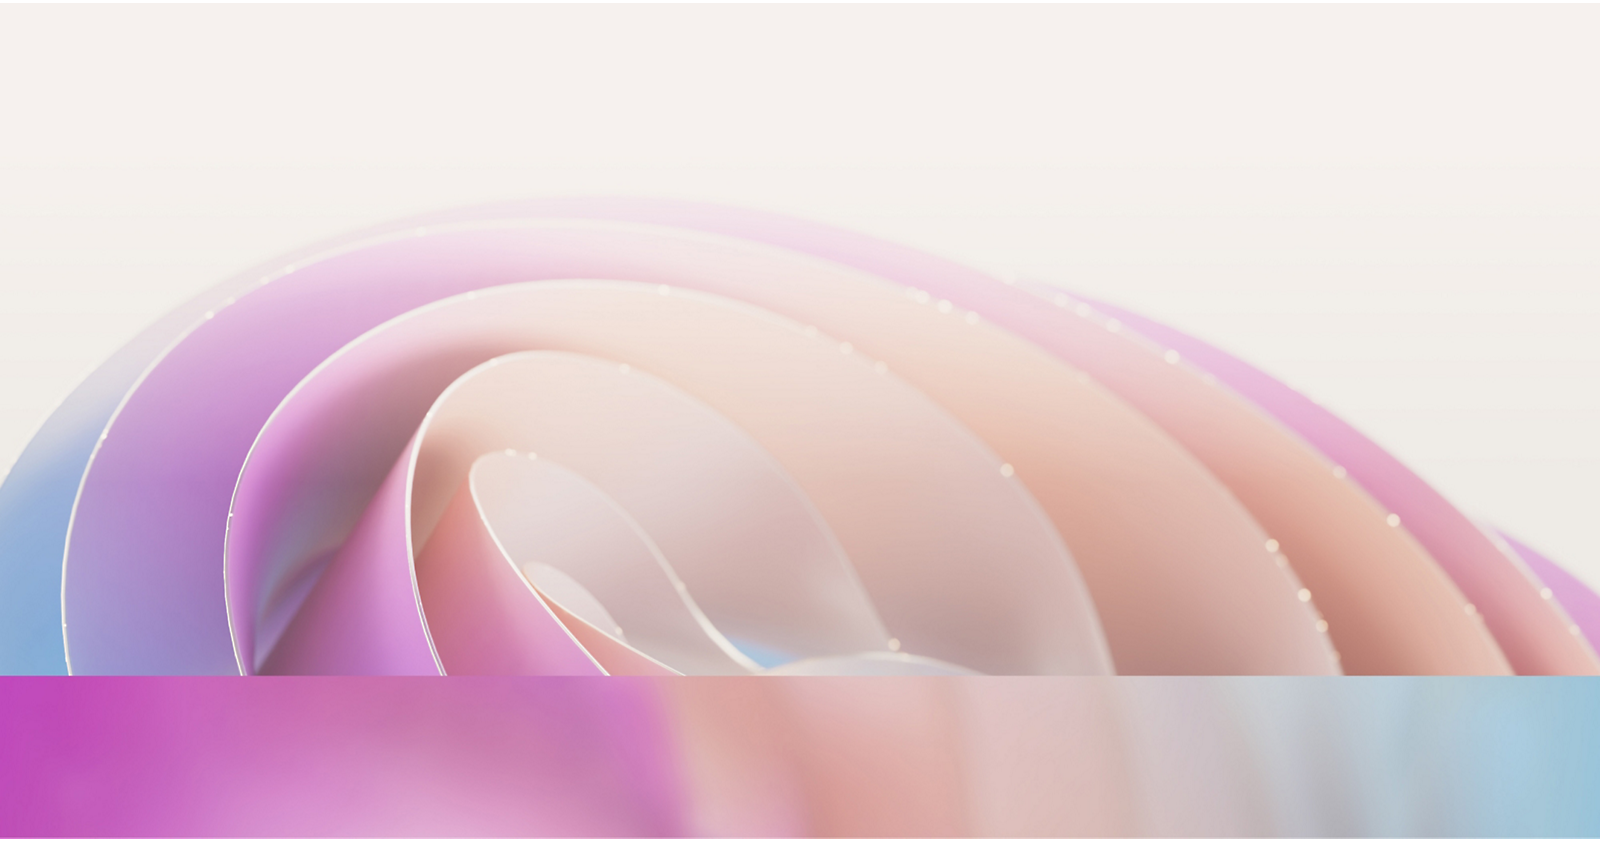 Imagen abstracta que muestra curvas de colores suaves superpuestas en tonos pastel rosa, púrpura y azul 